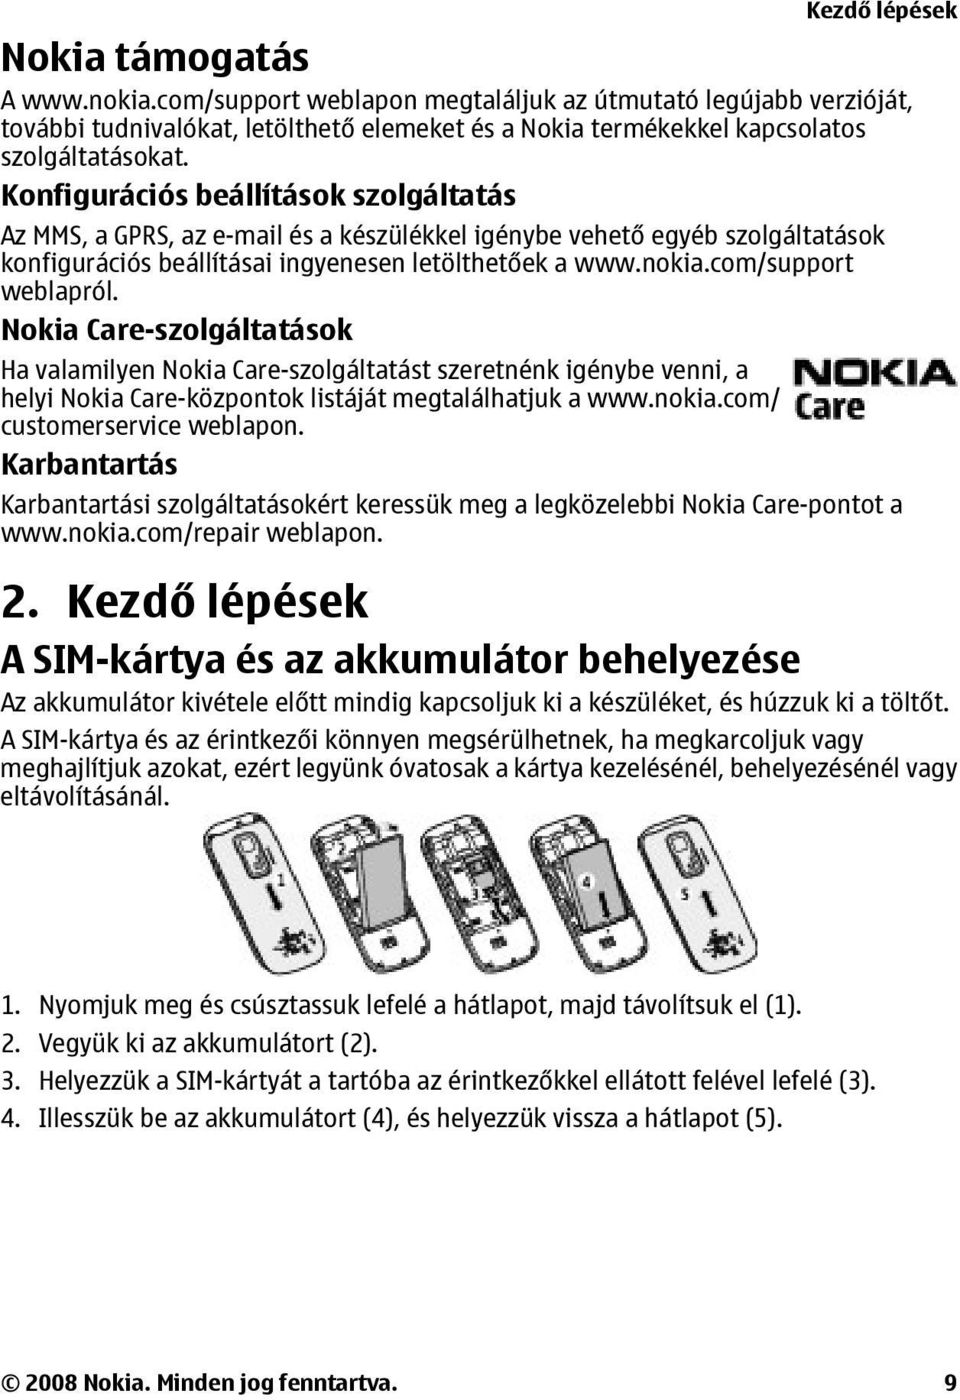 com/support weblapról. Nokia Care-szolgáltatások Ha valamilyen Nokia Care-szolgáltatást szeretnénk igénybe venni, a helyi Nokia Care-központok listáját megtalálhatjuk a www.nokia.